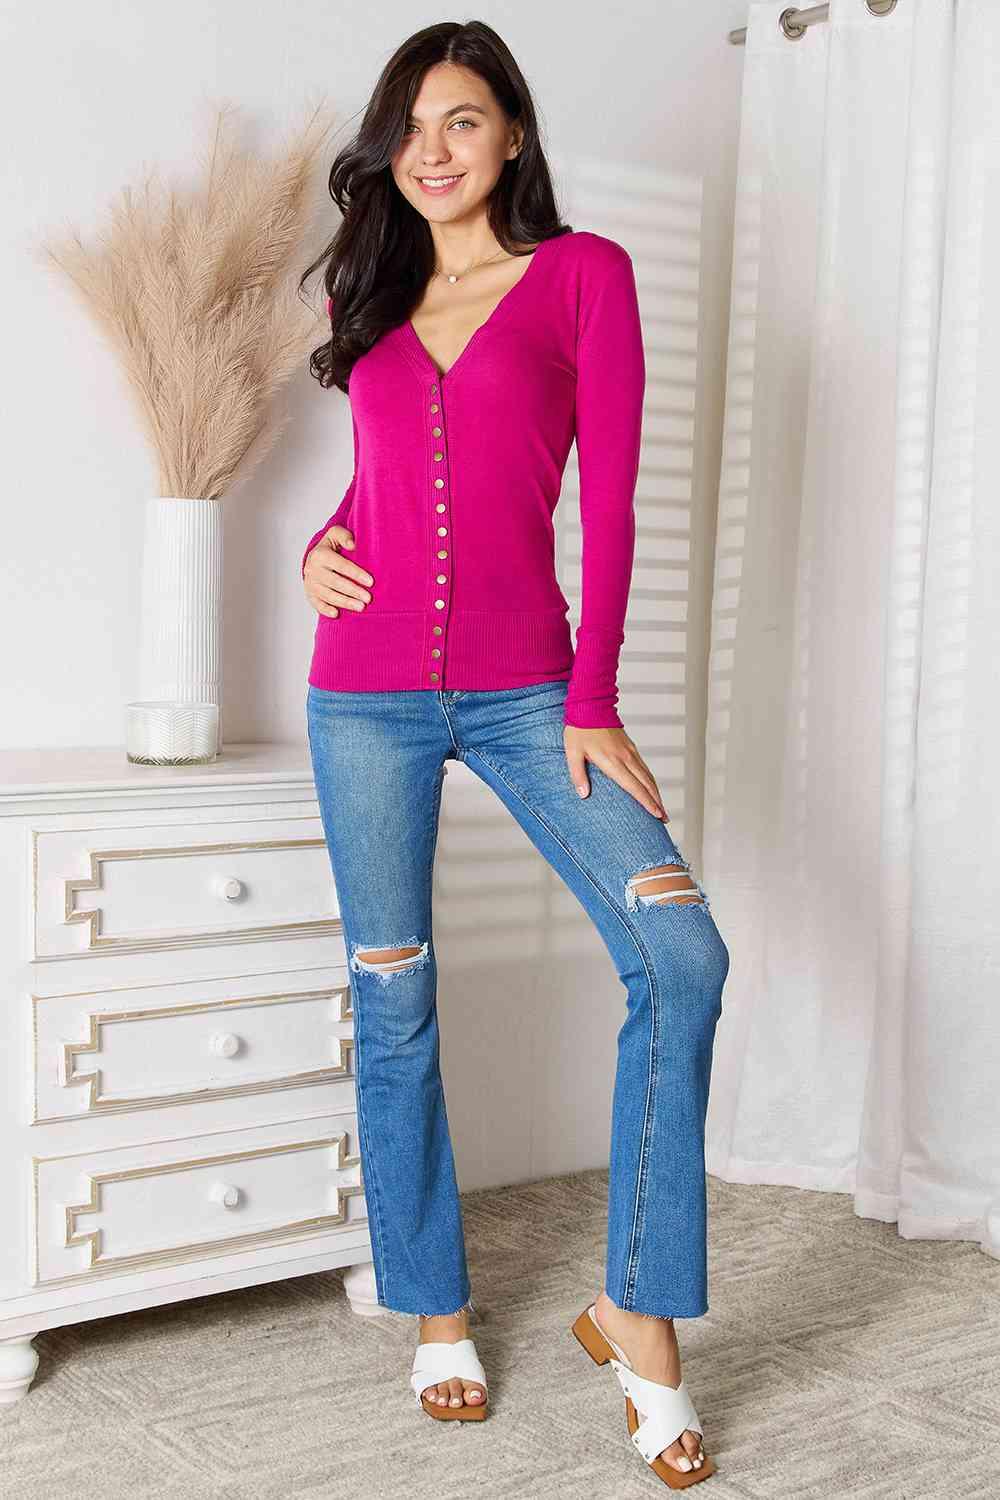 Zenana Full Size V - Neck Long Sleeve Cardigan - Happily Ever Atchison Shop Co.